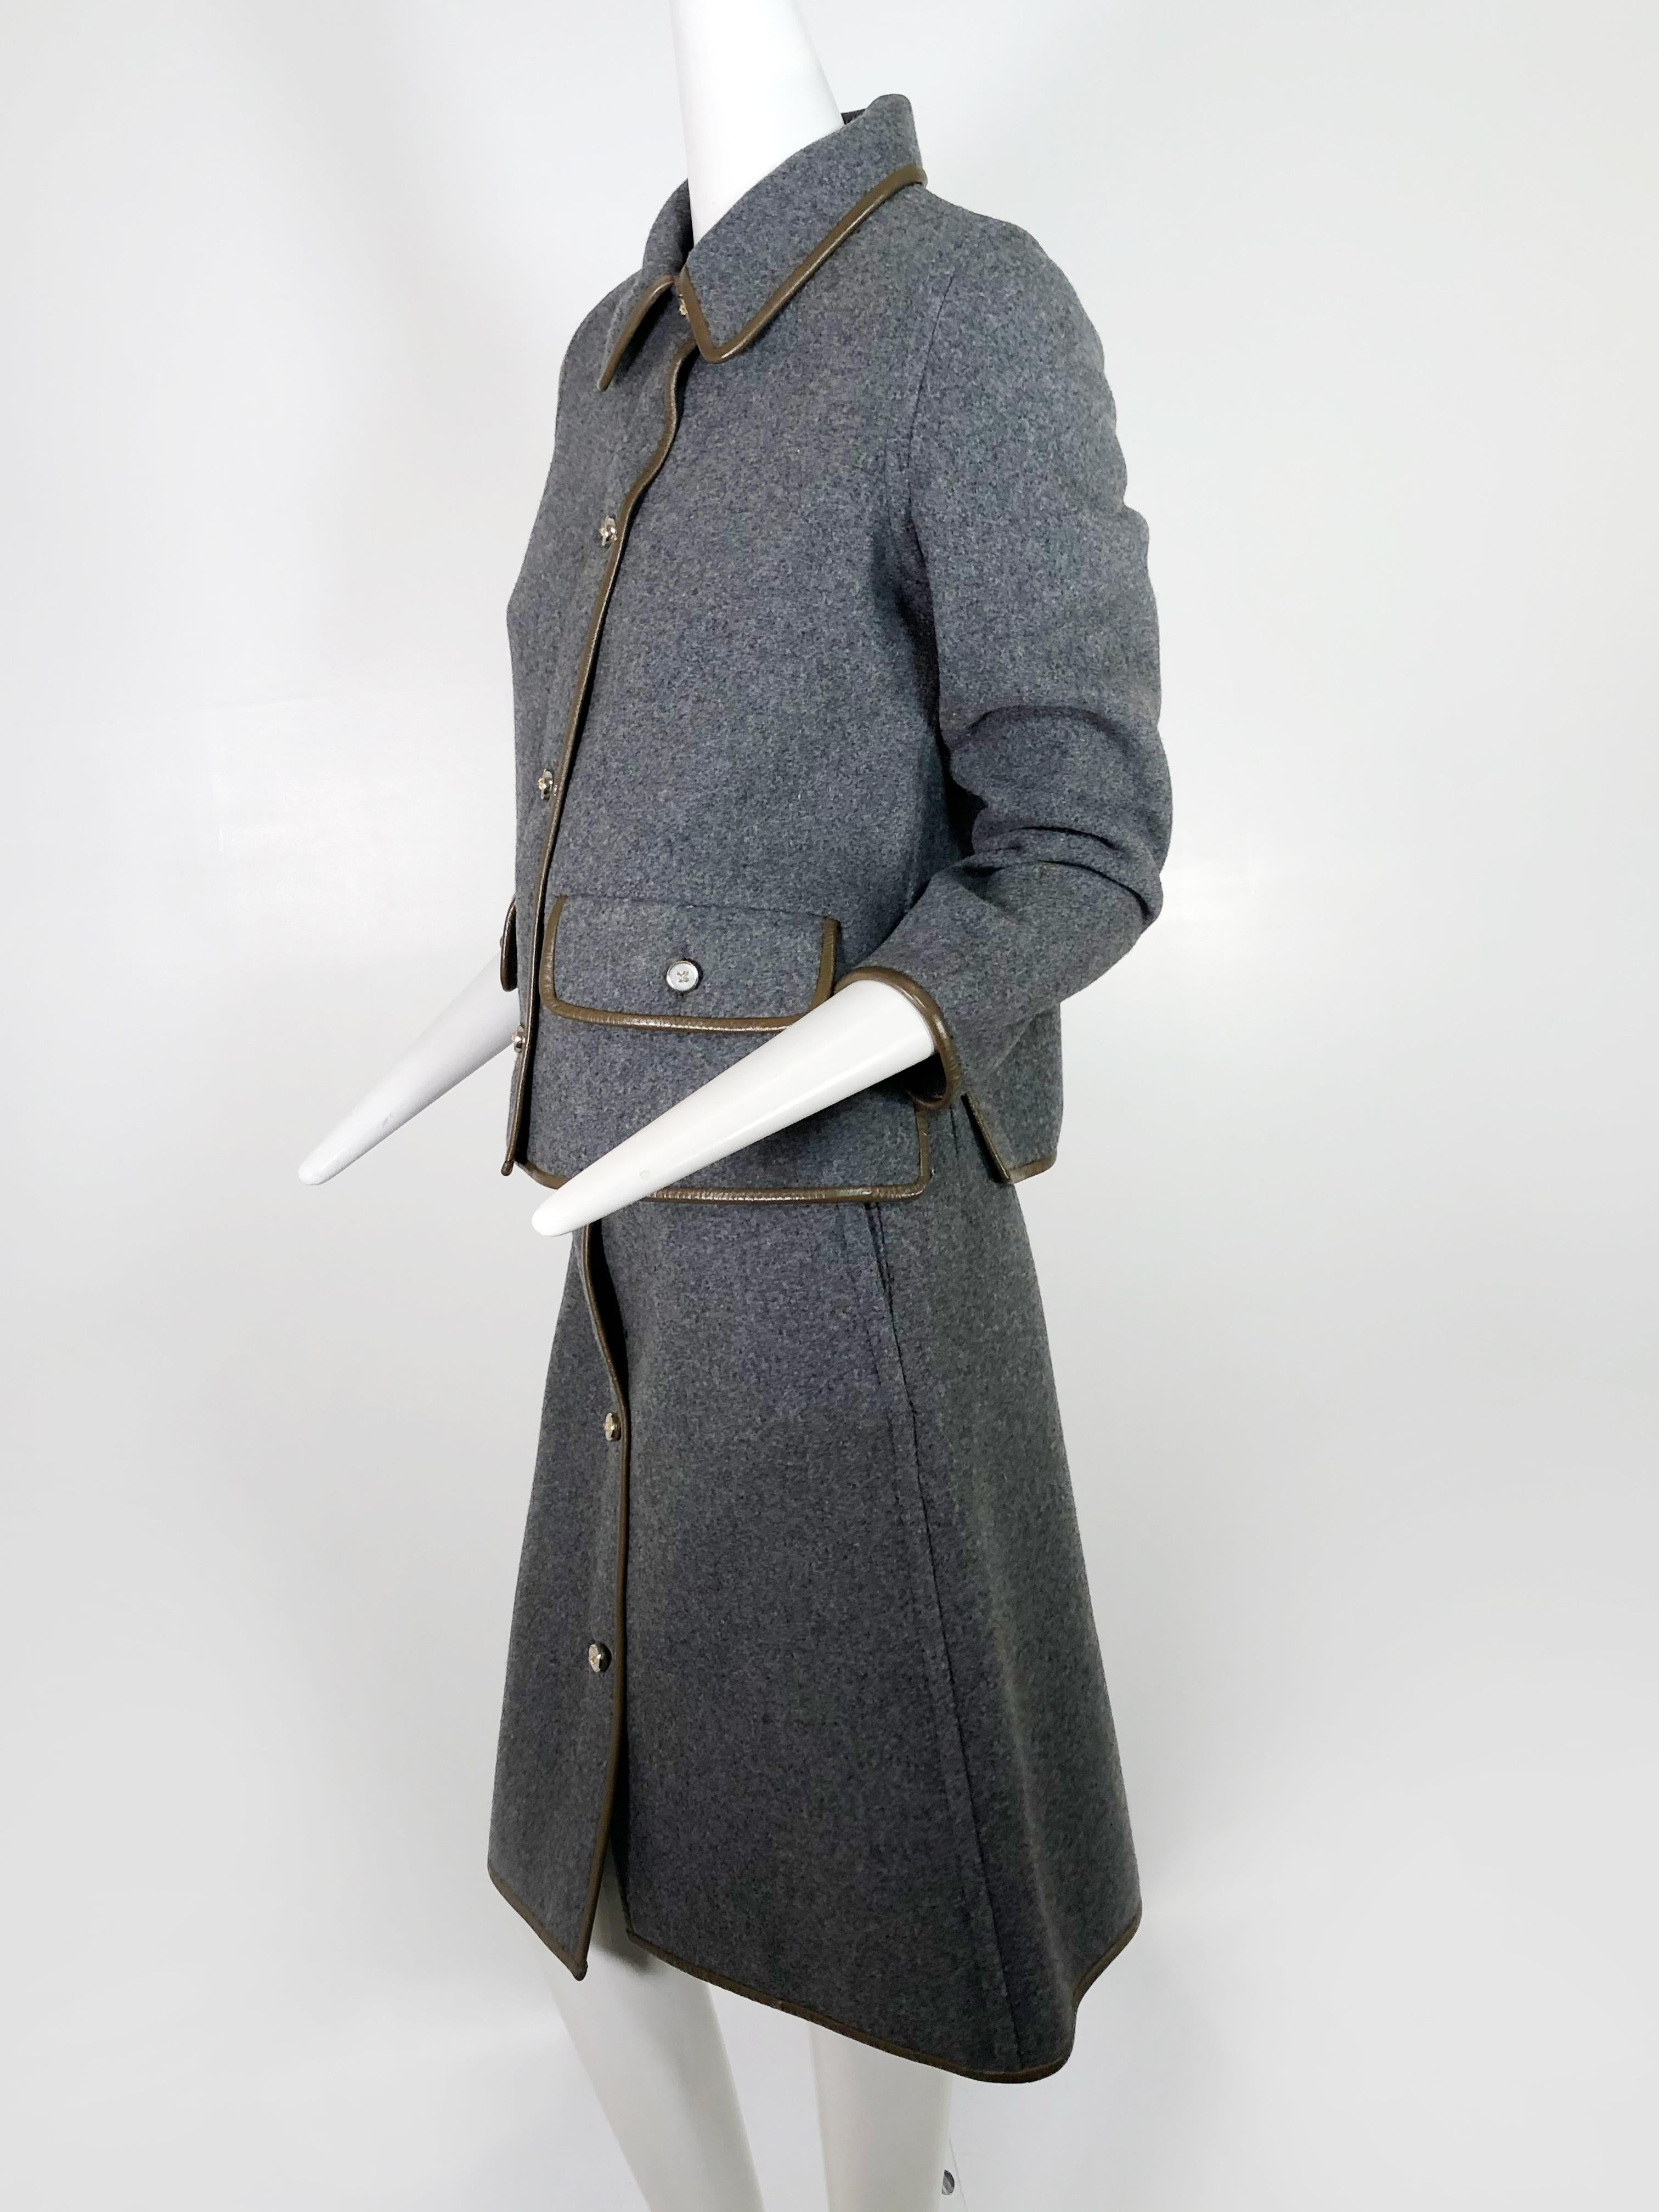 Tailleur jupe en laine grise avec bordure en cuir marron Sills by Bonnie Cashin, années 1960 Excellent état - En vente à Gresham, OR